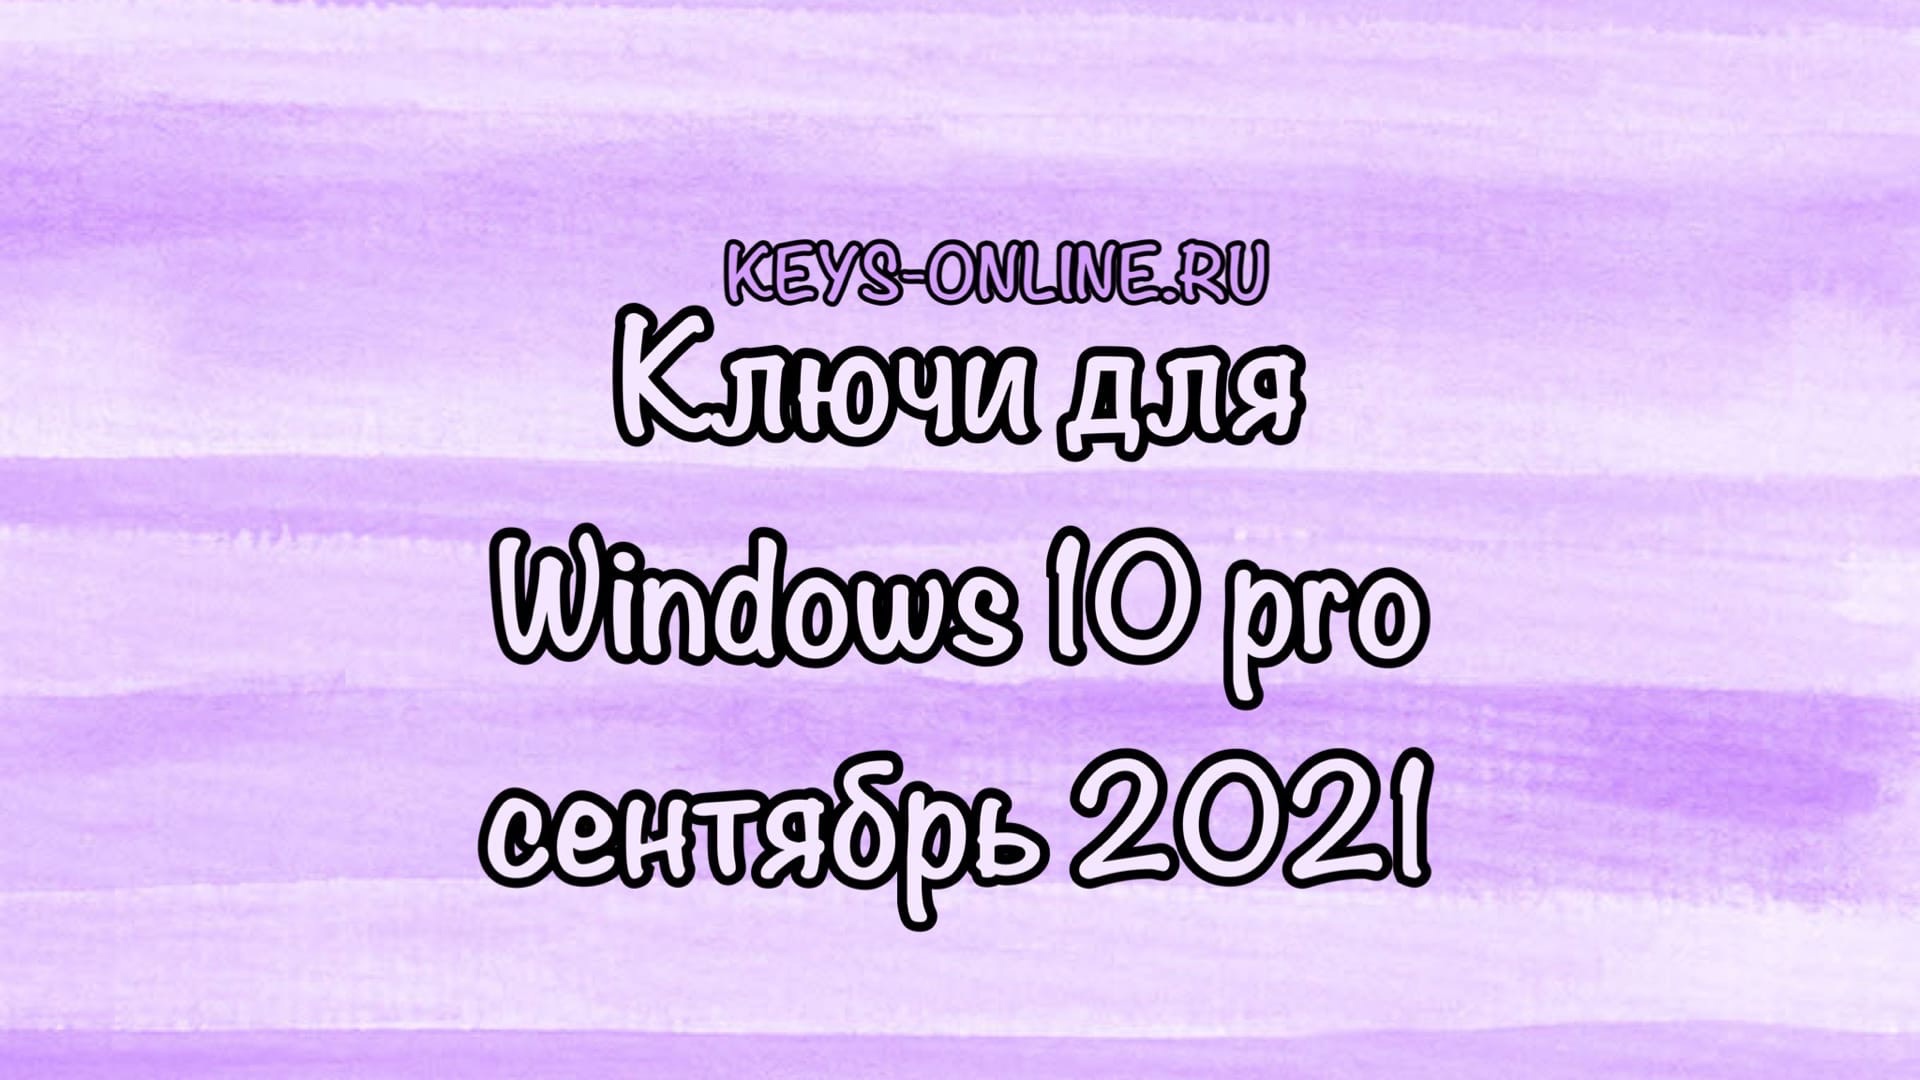 Ключ для windows 10 pro сентябрь 2021